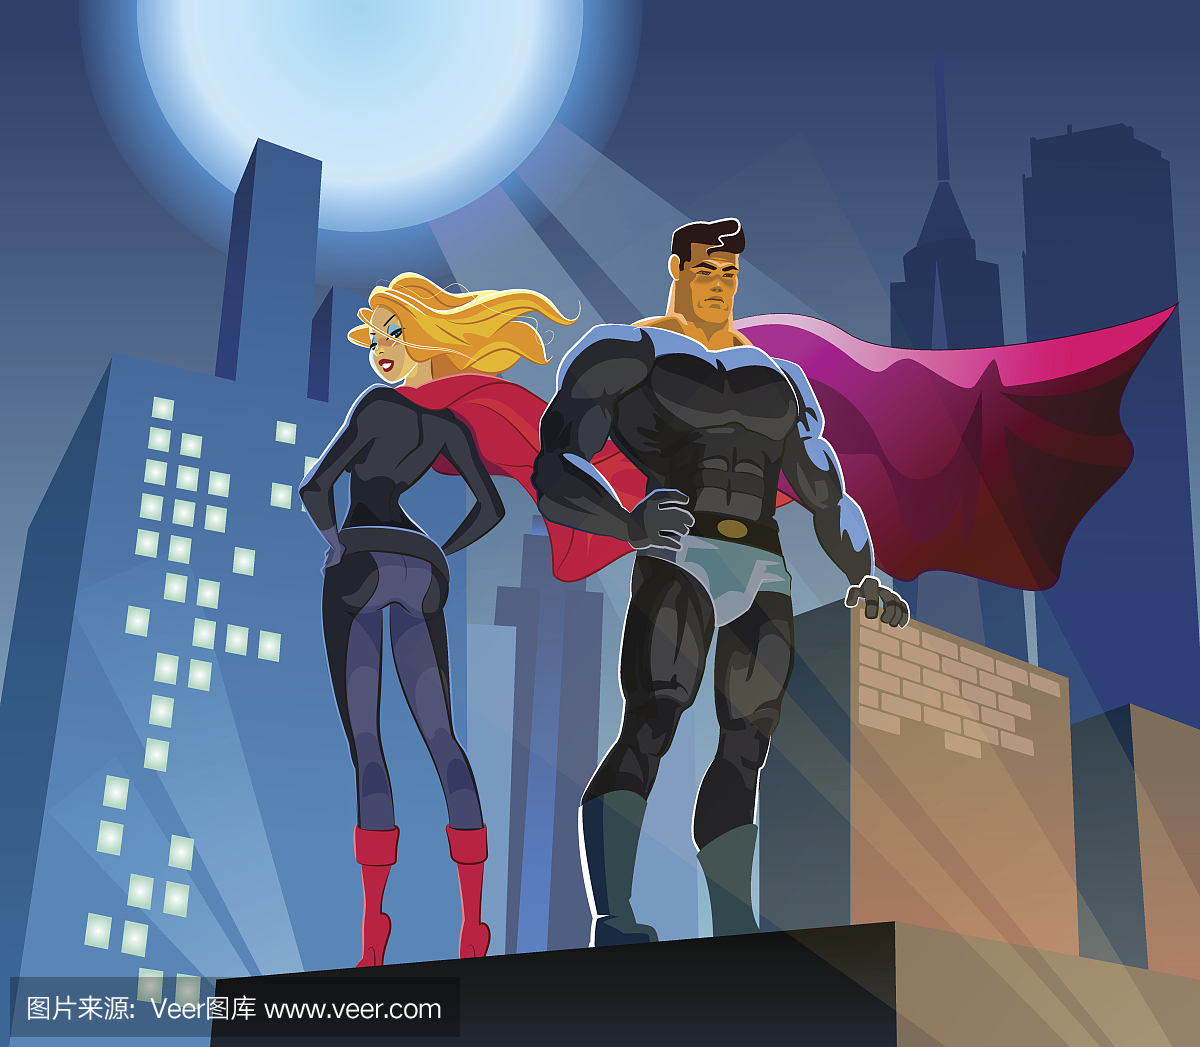 超级英雄夫妇:摩天大楼罗马的男性和女性超级